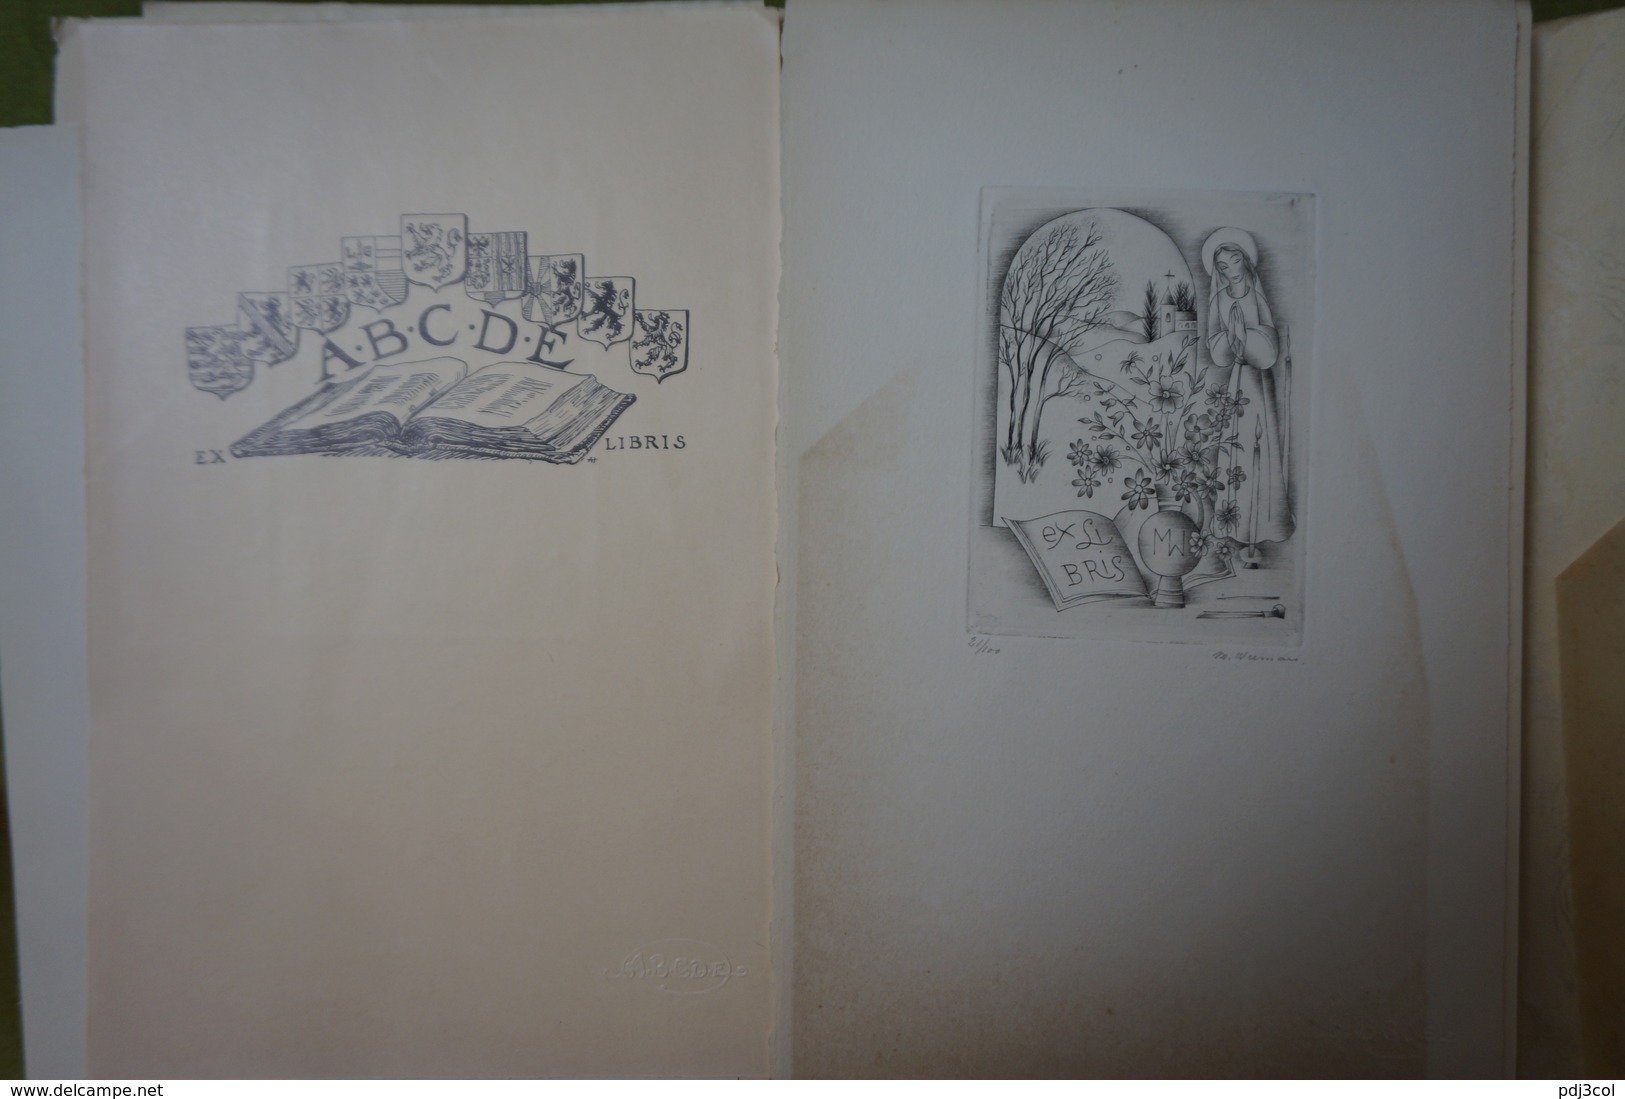 Association Belge Des Collectionneurs Et Dessinateurs D'Ex-libris - Exercice 1951 - 10 Reproductions Clichées Ou Gravées - Bookplates